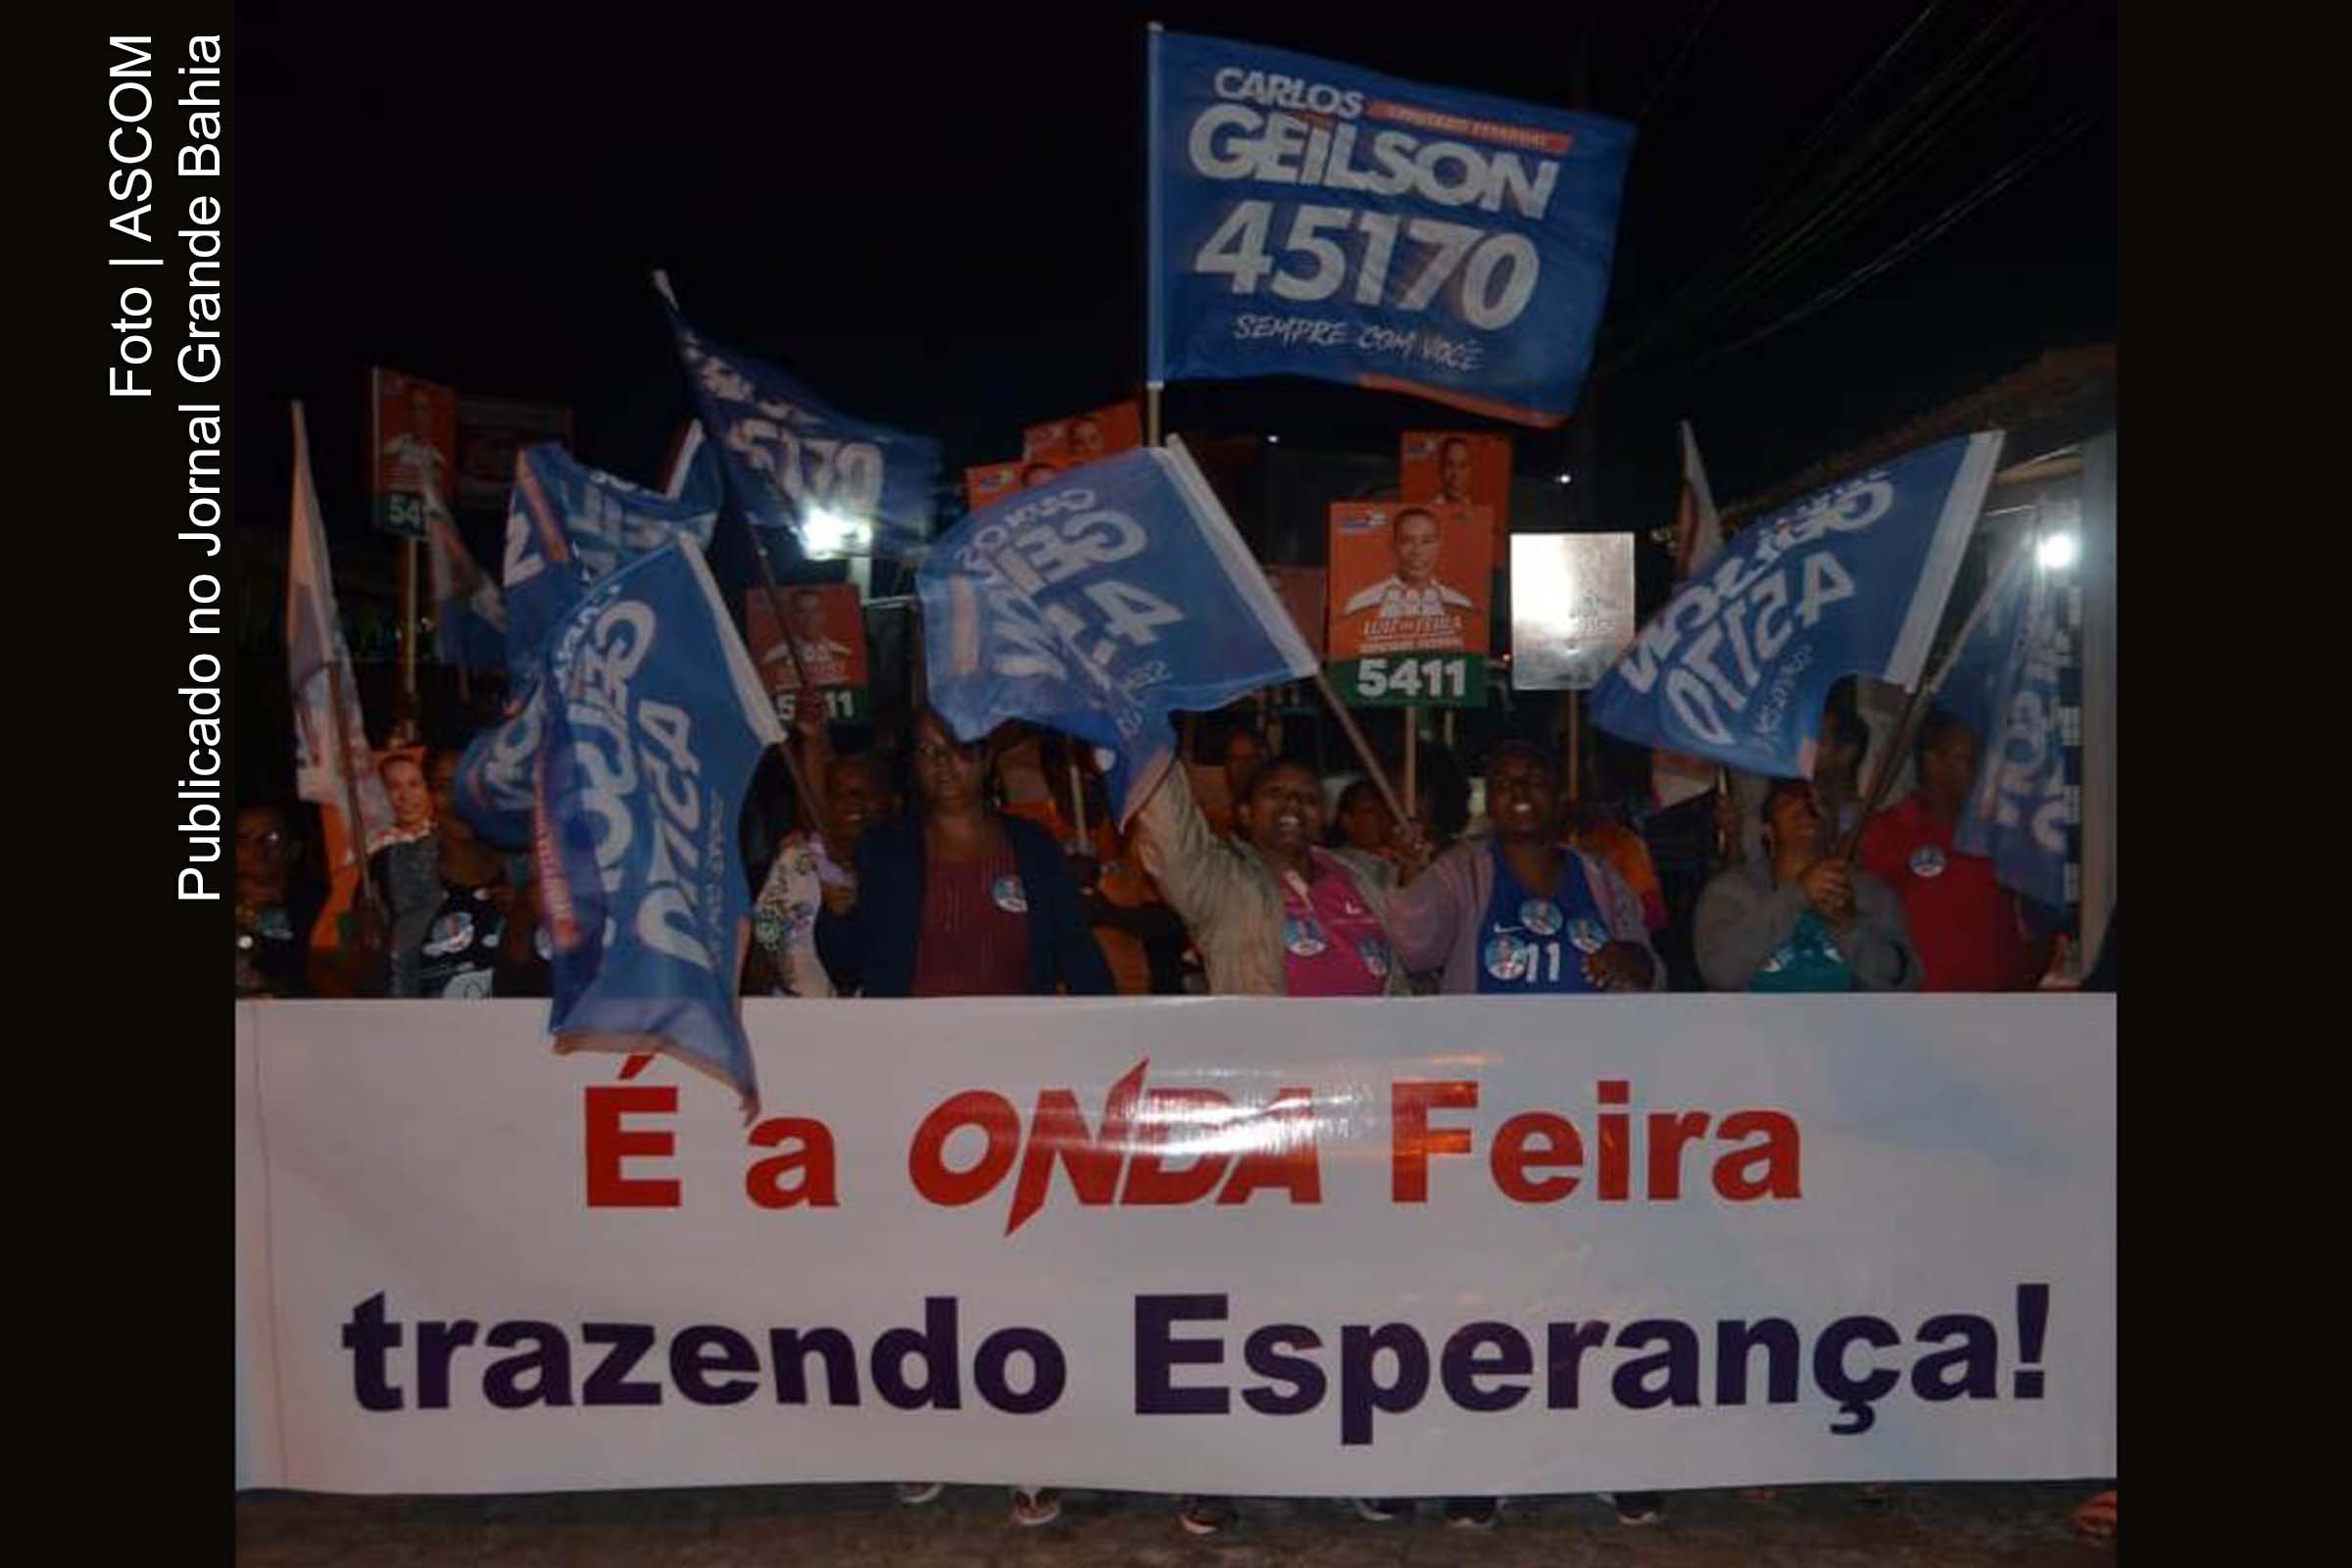 Deputado estadual e candidato à reeleição Carlos Geilson promove caminhada no Conjunto Ildes Ferreira.